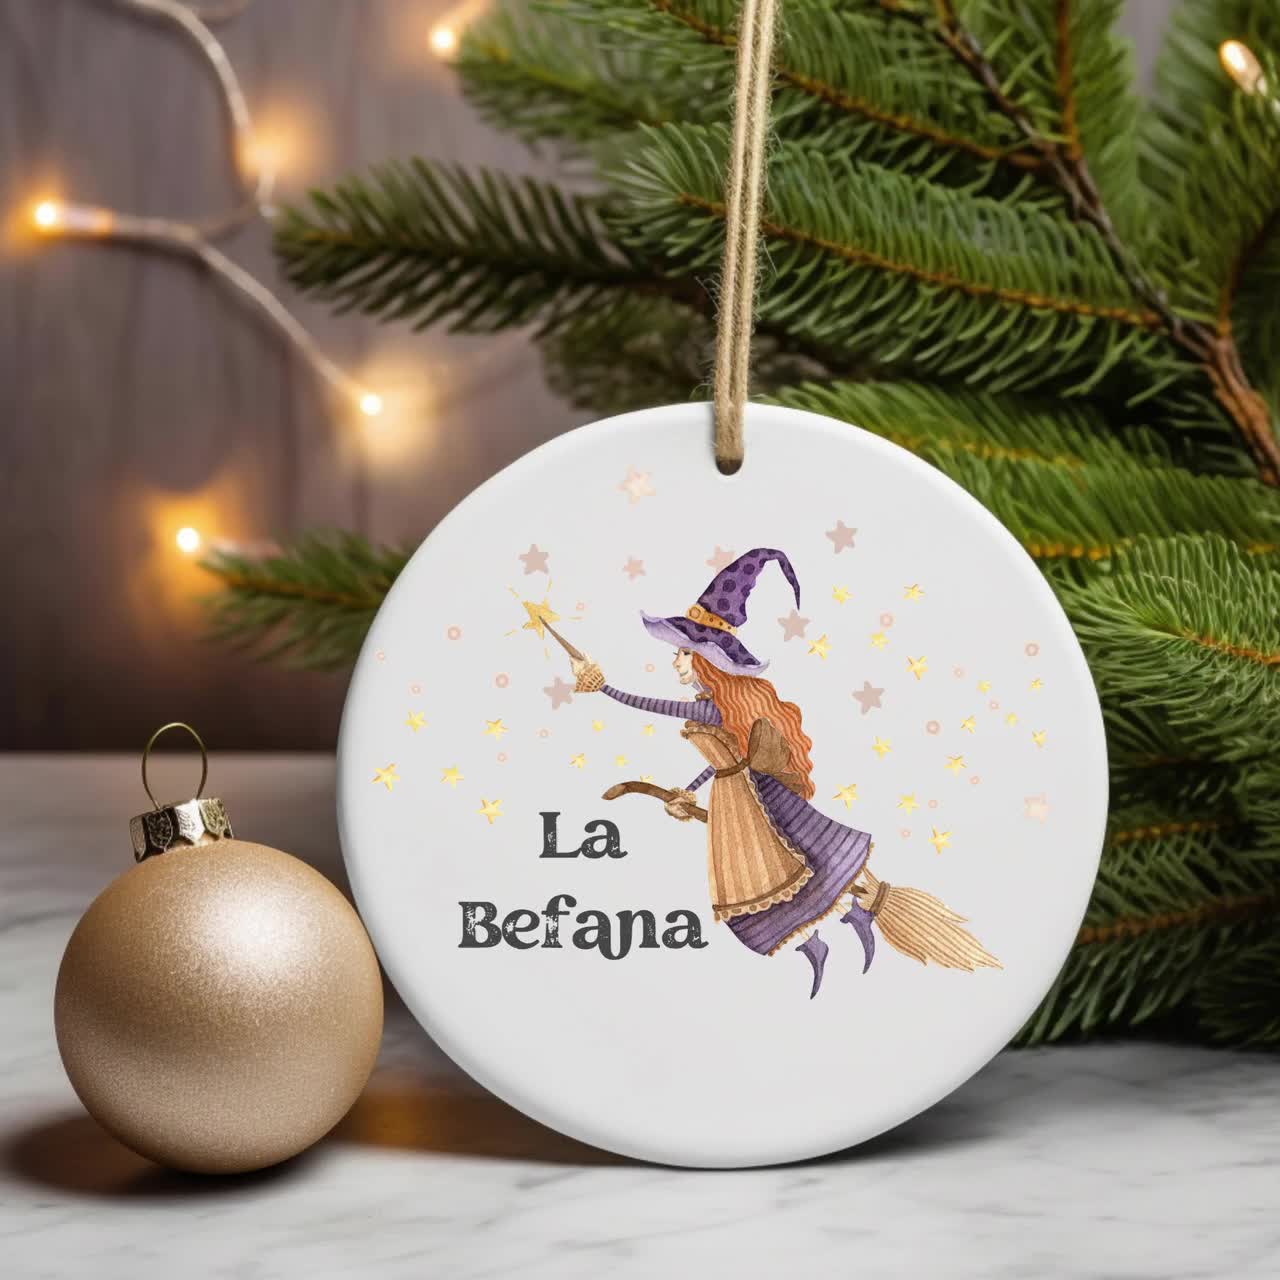 La Befana Christmas ornament